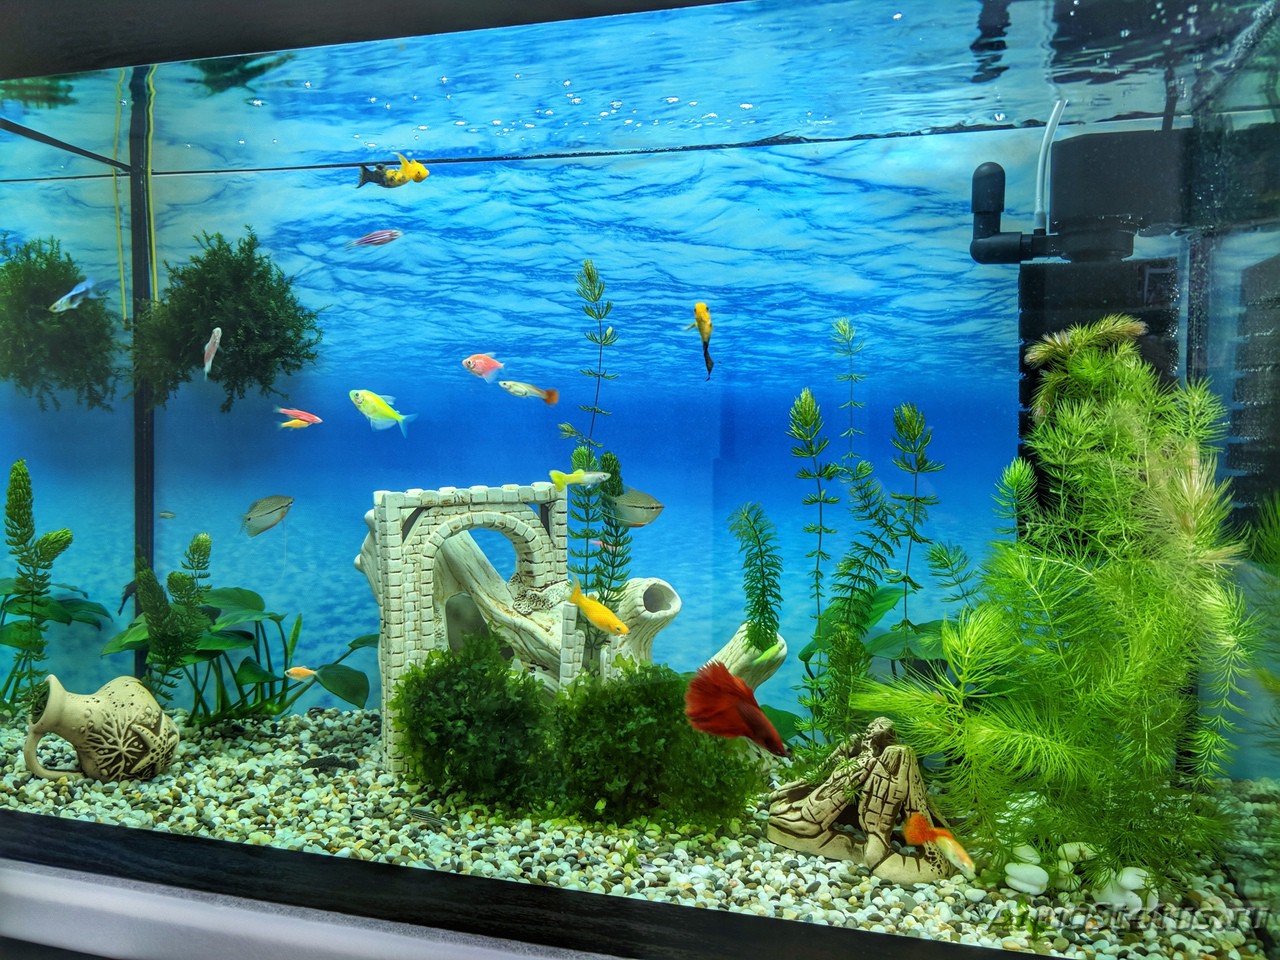 Декор аквариума 100 литров фото